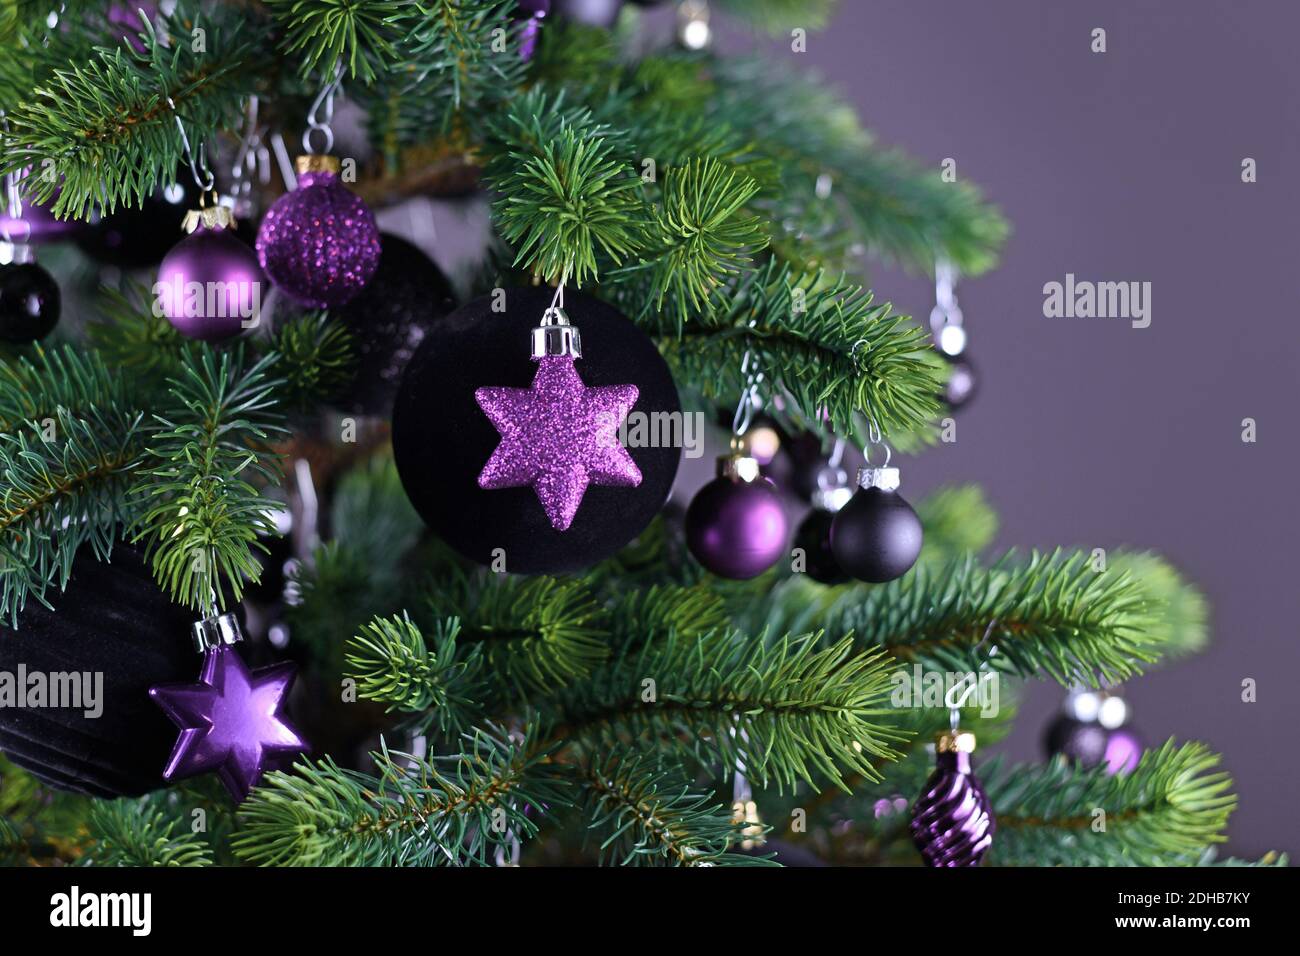 Nahaufnahme der sternförmigen lila Glas Baum Ornament Kugel Mit dekorierten Weihnachtsbaum mit anderen saisonalen Baumschmuck auf Dunkelgrauer Hintergrund Stockfoto